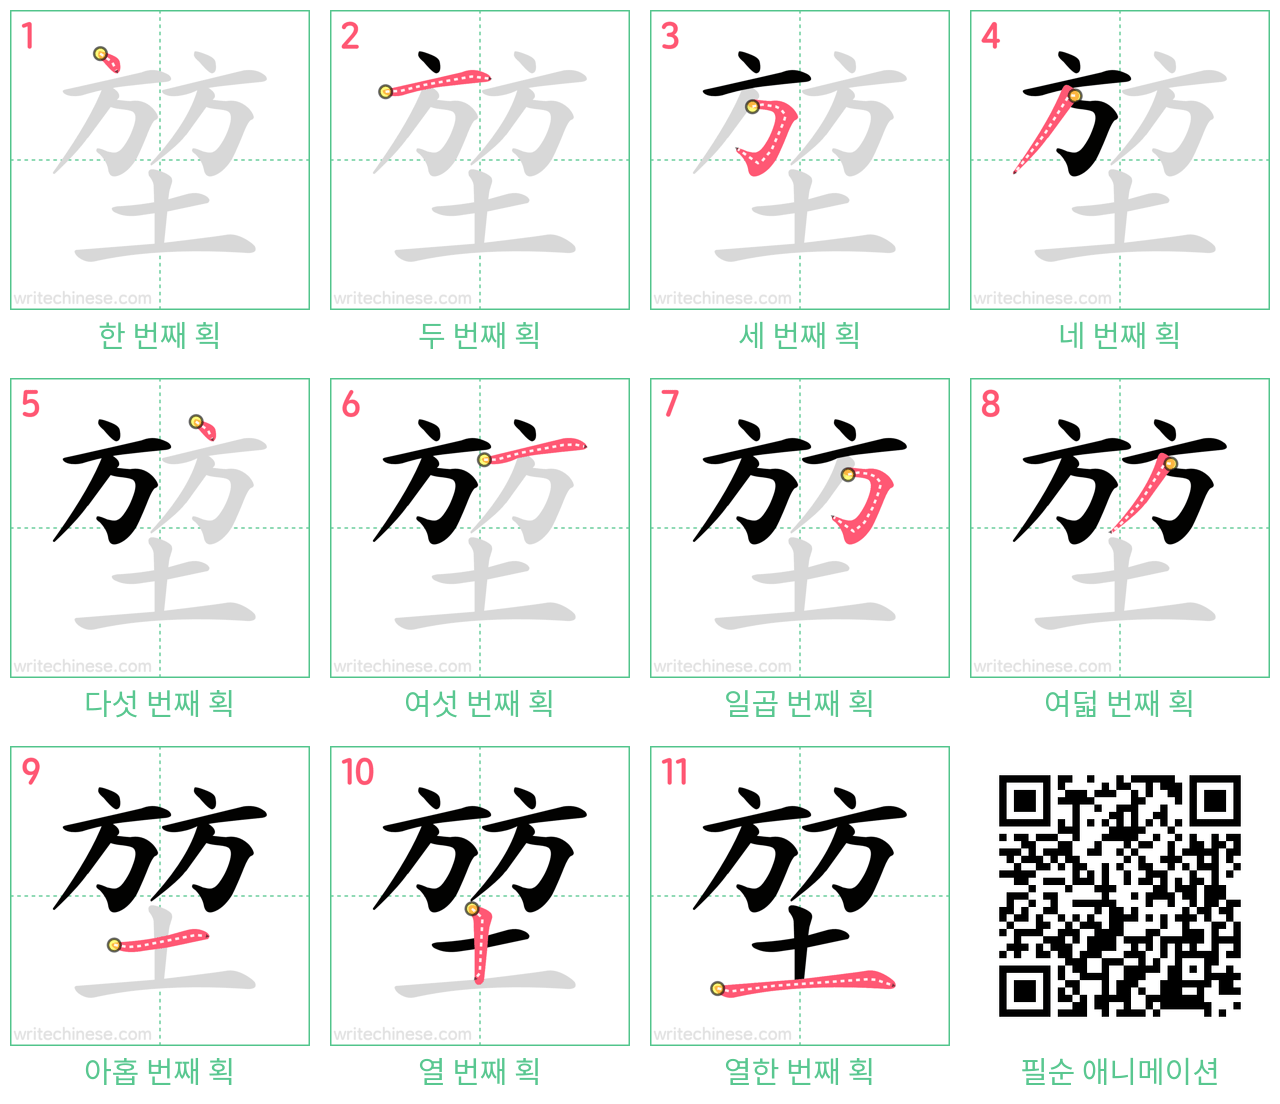 堃 step-by-step stroke order diagrams